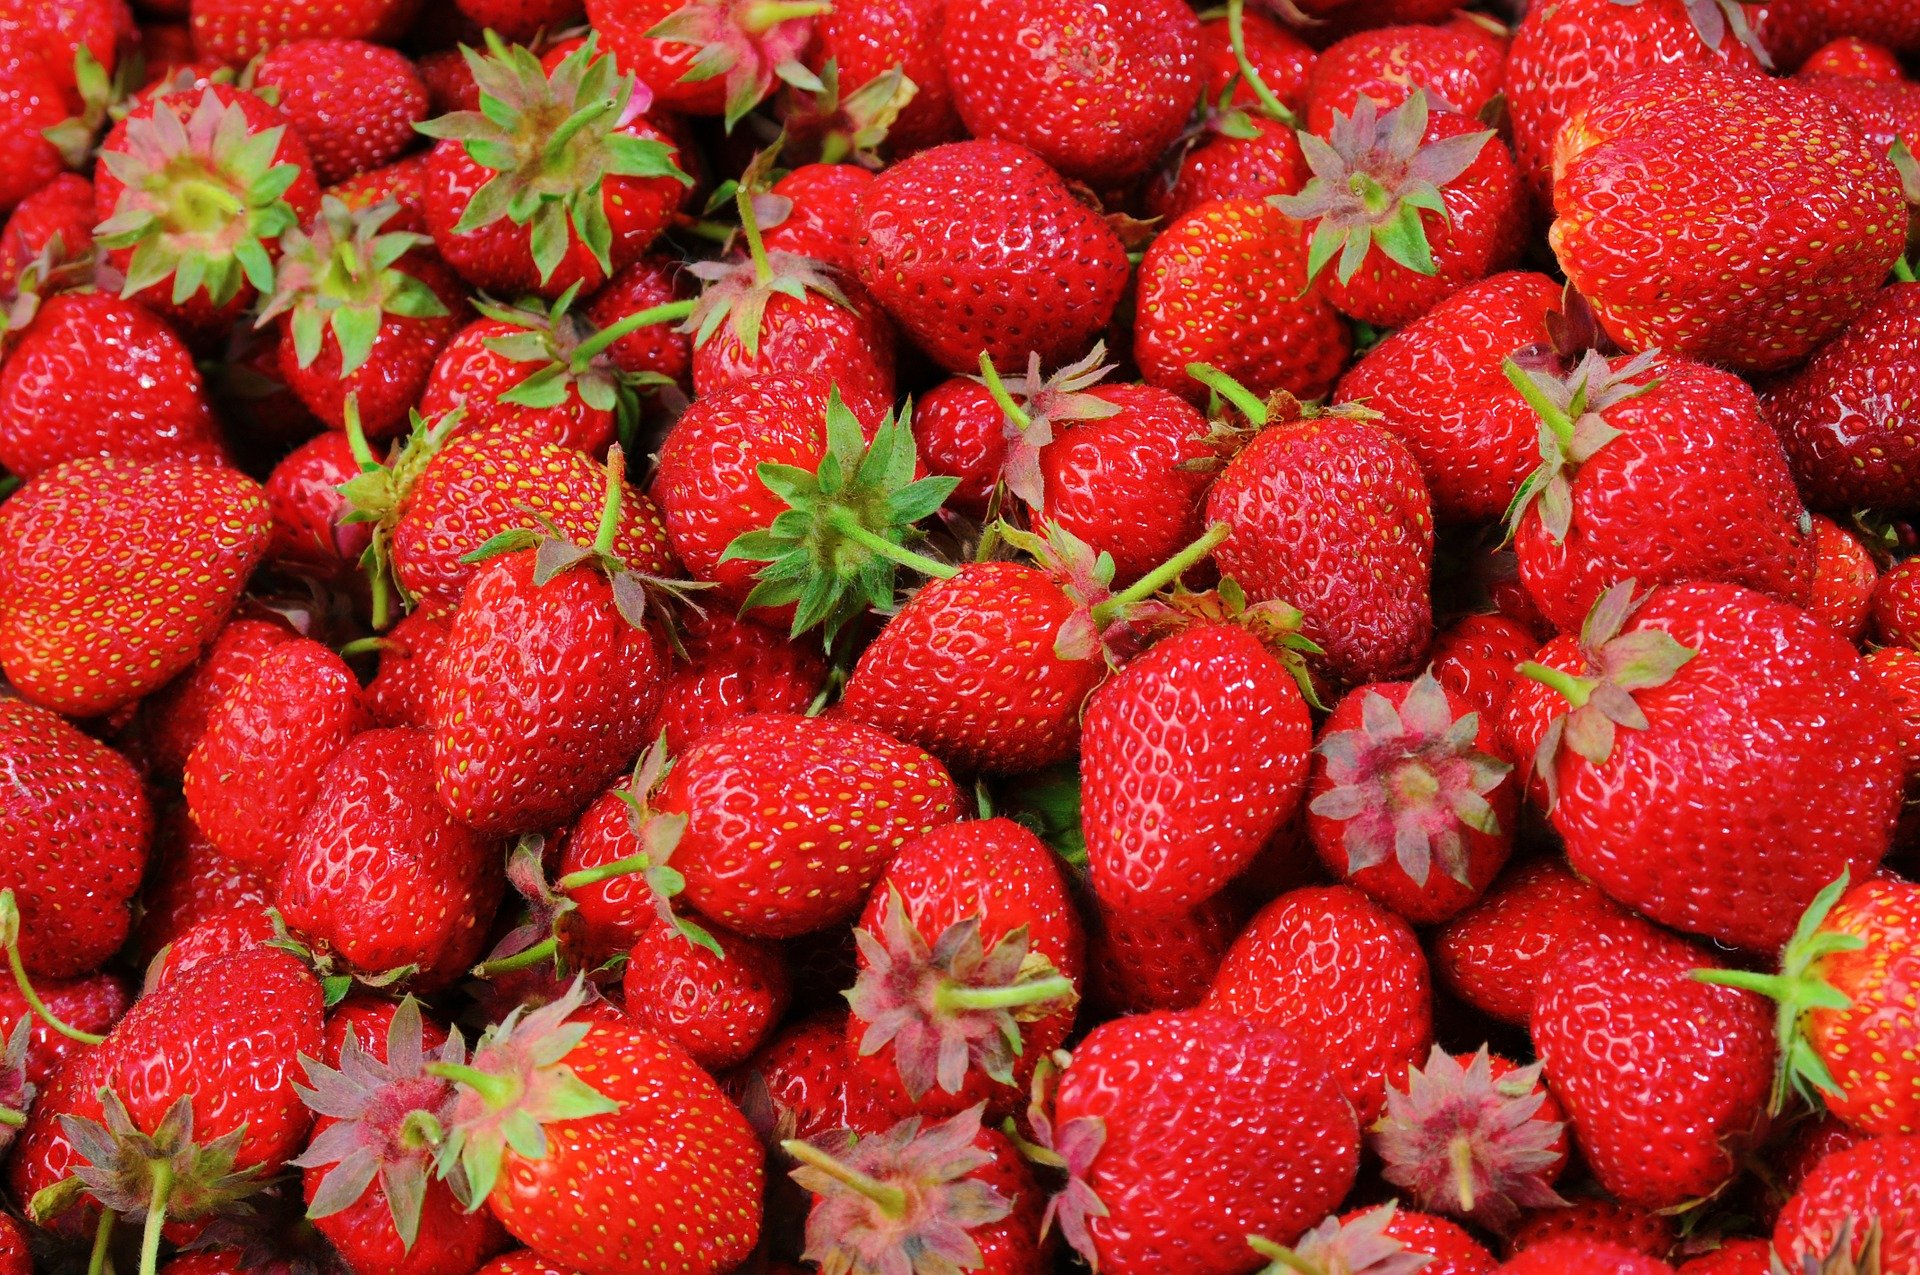 les fruits owoce quiz z francuskiego nauka języka zabawa dla maluszków przedszkole test wiedzy dzieci dwujęzyczne słówka słownictwo truskawka fraise